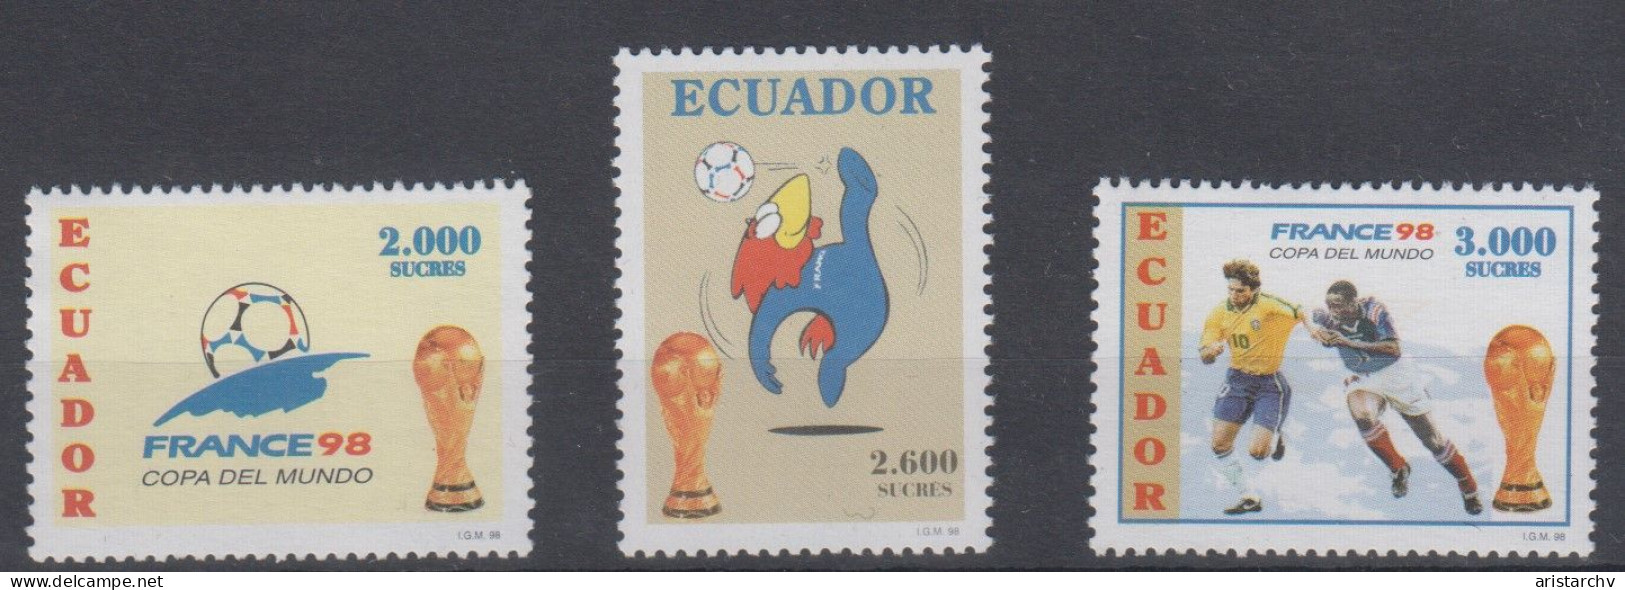 ECUADOR 1998 FOOTBALL WORLD CUP - 1998 – France